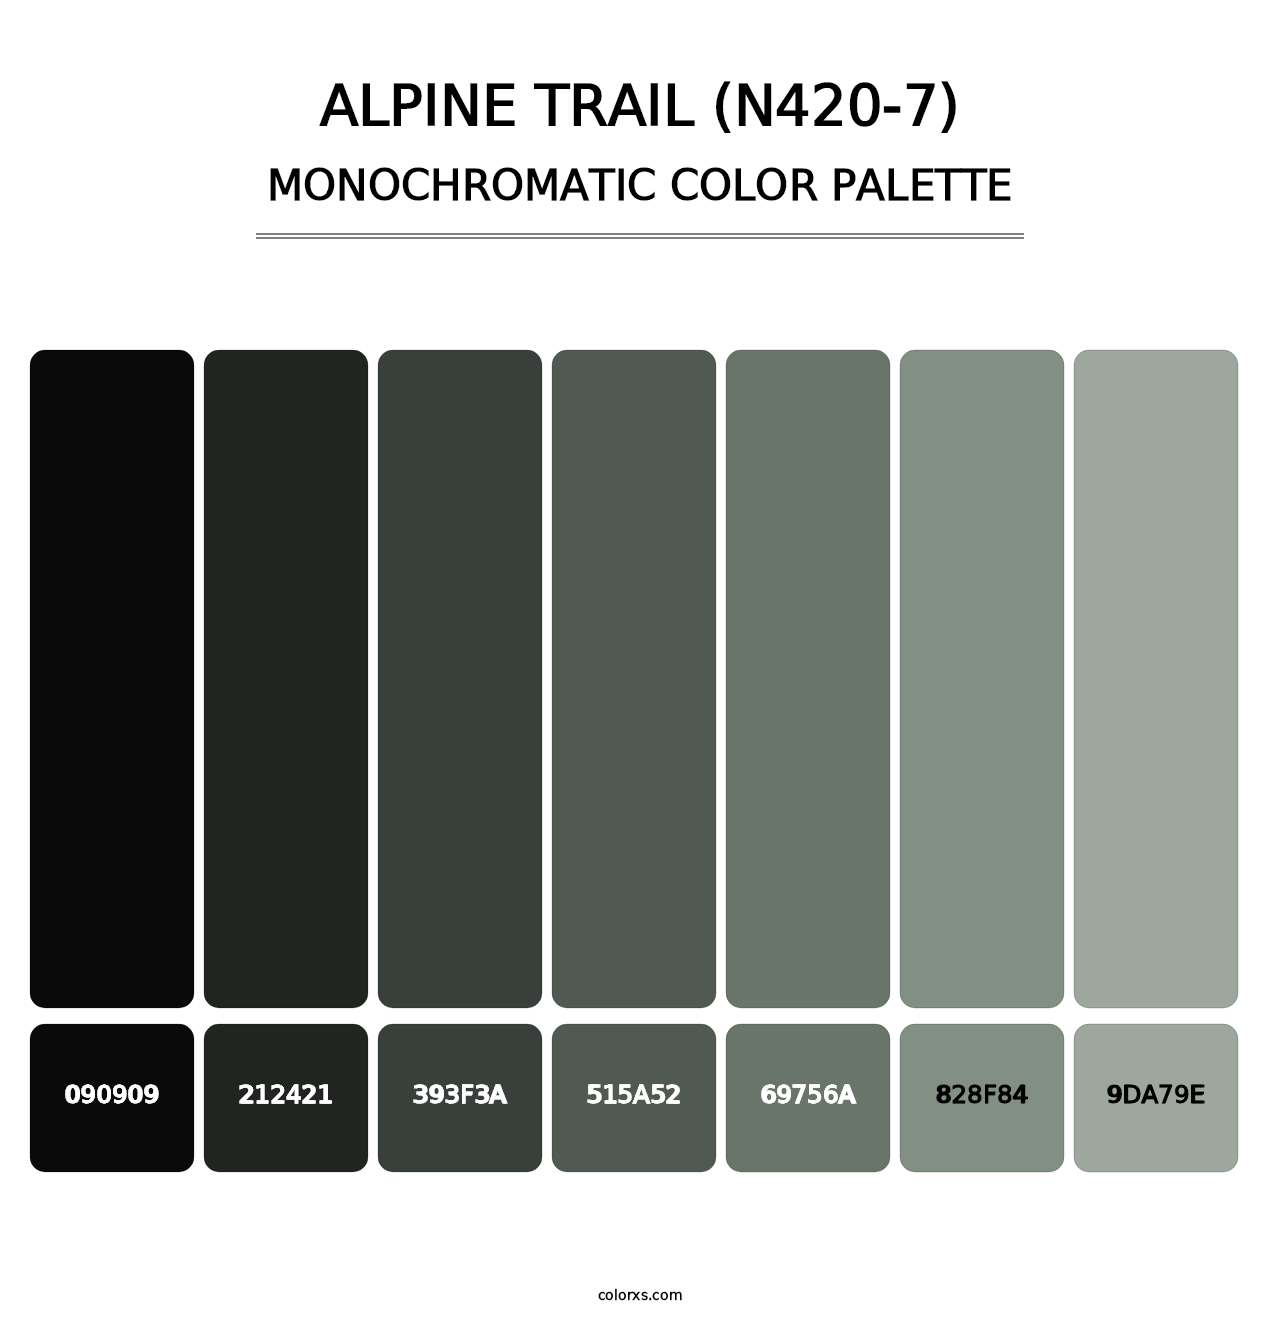 Alpine Trail (N420-7) - Monochromatic Color Palette